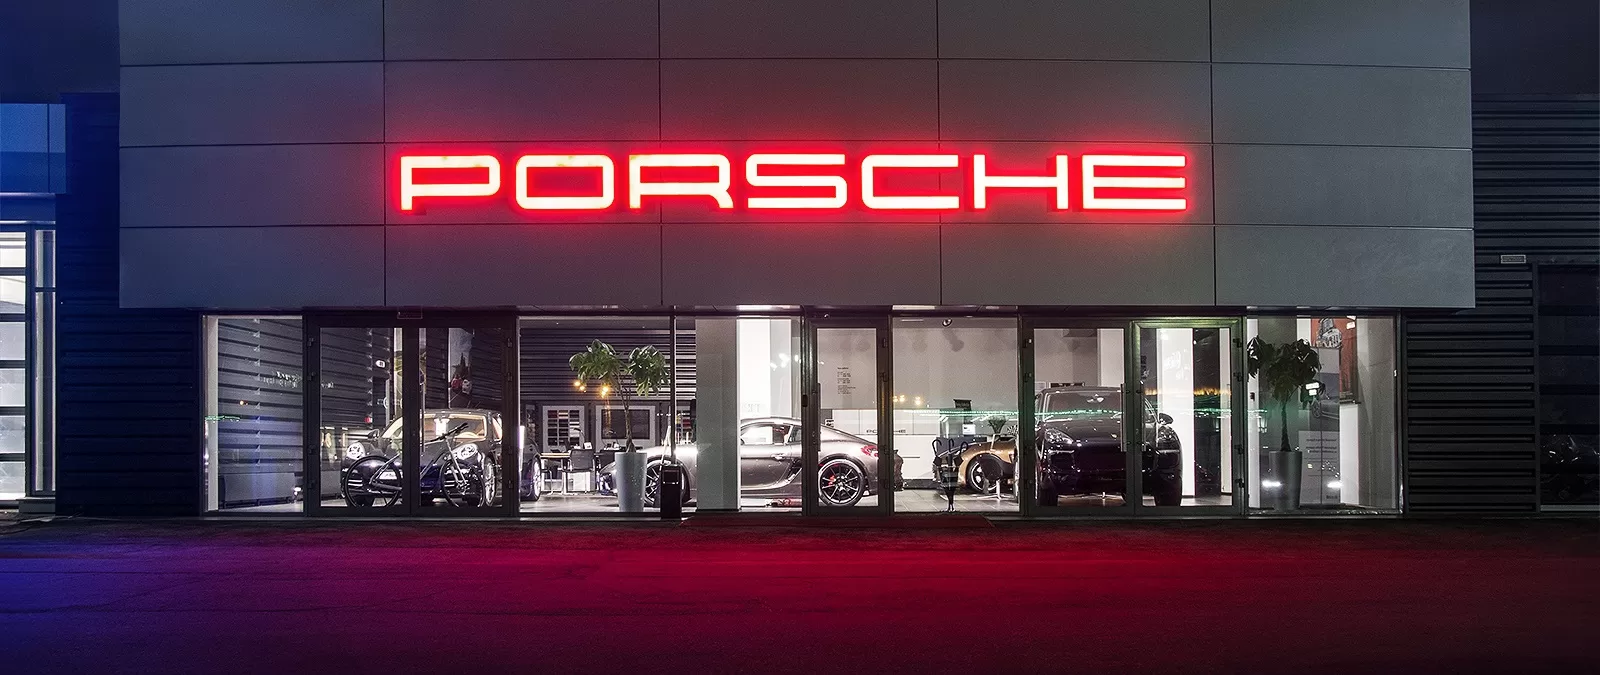 Объявлены лучшие официальные дилеры Porsche в России в области послепродажного обслуживания по итогам 2019 года.